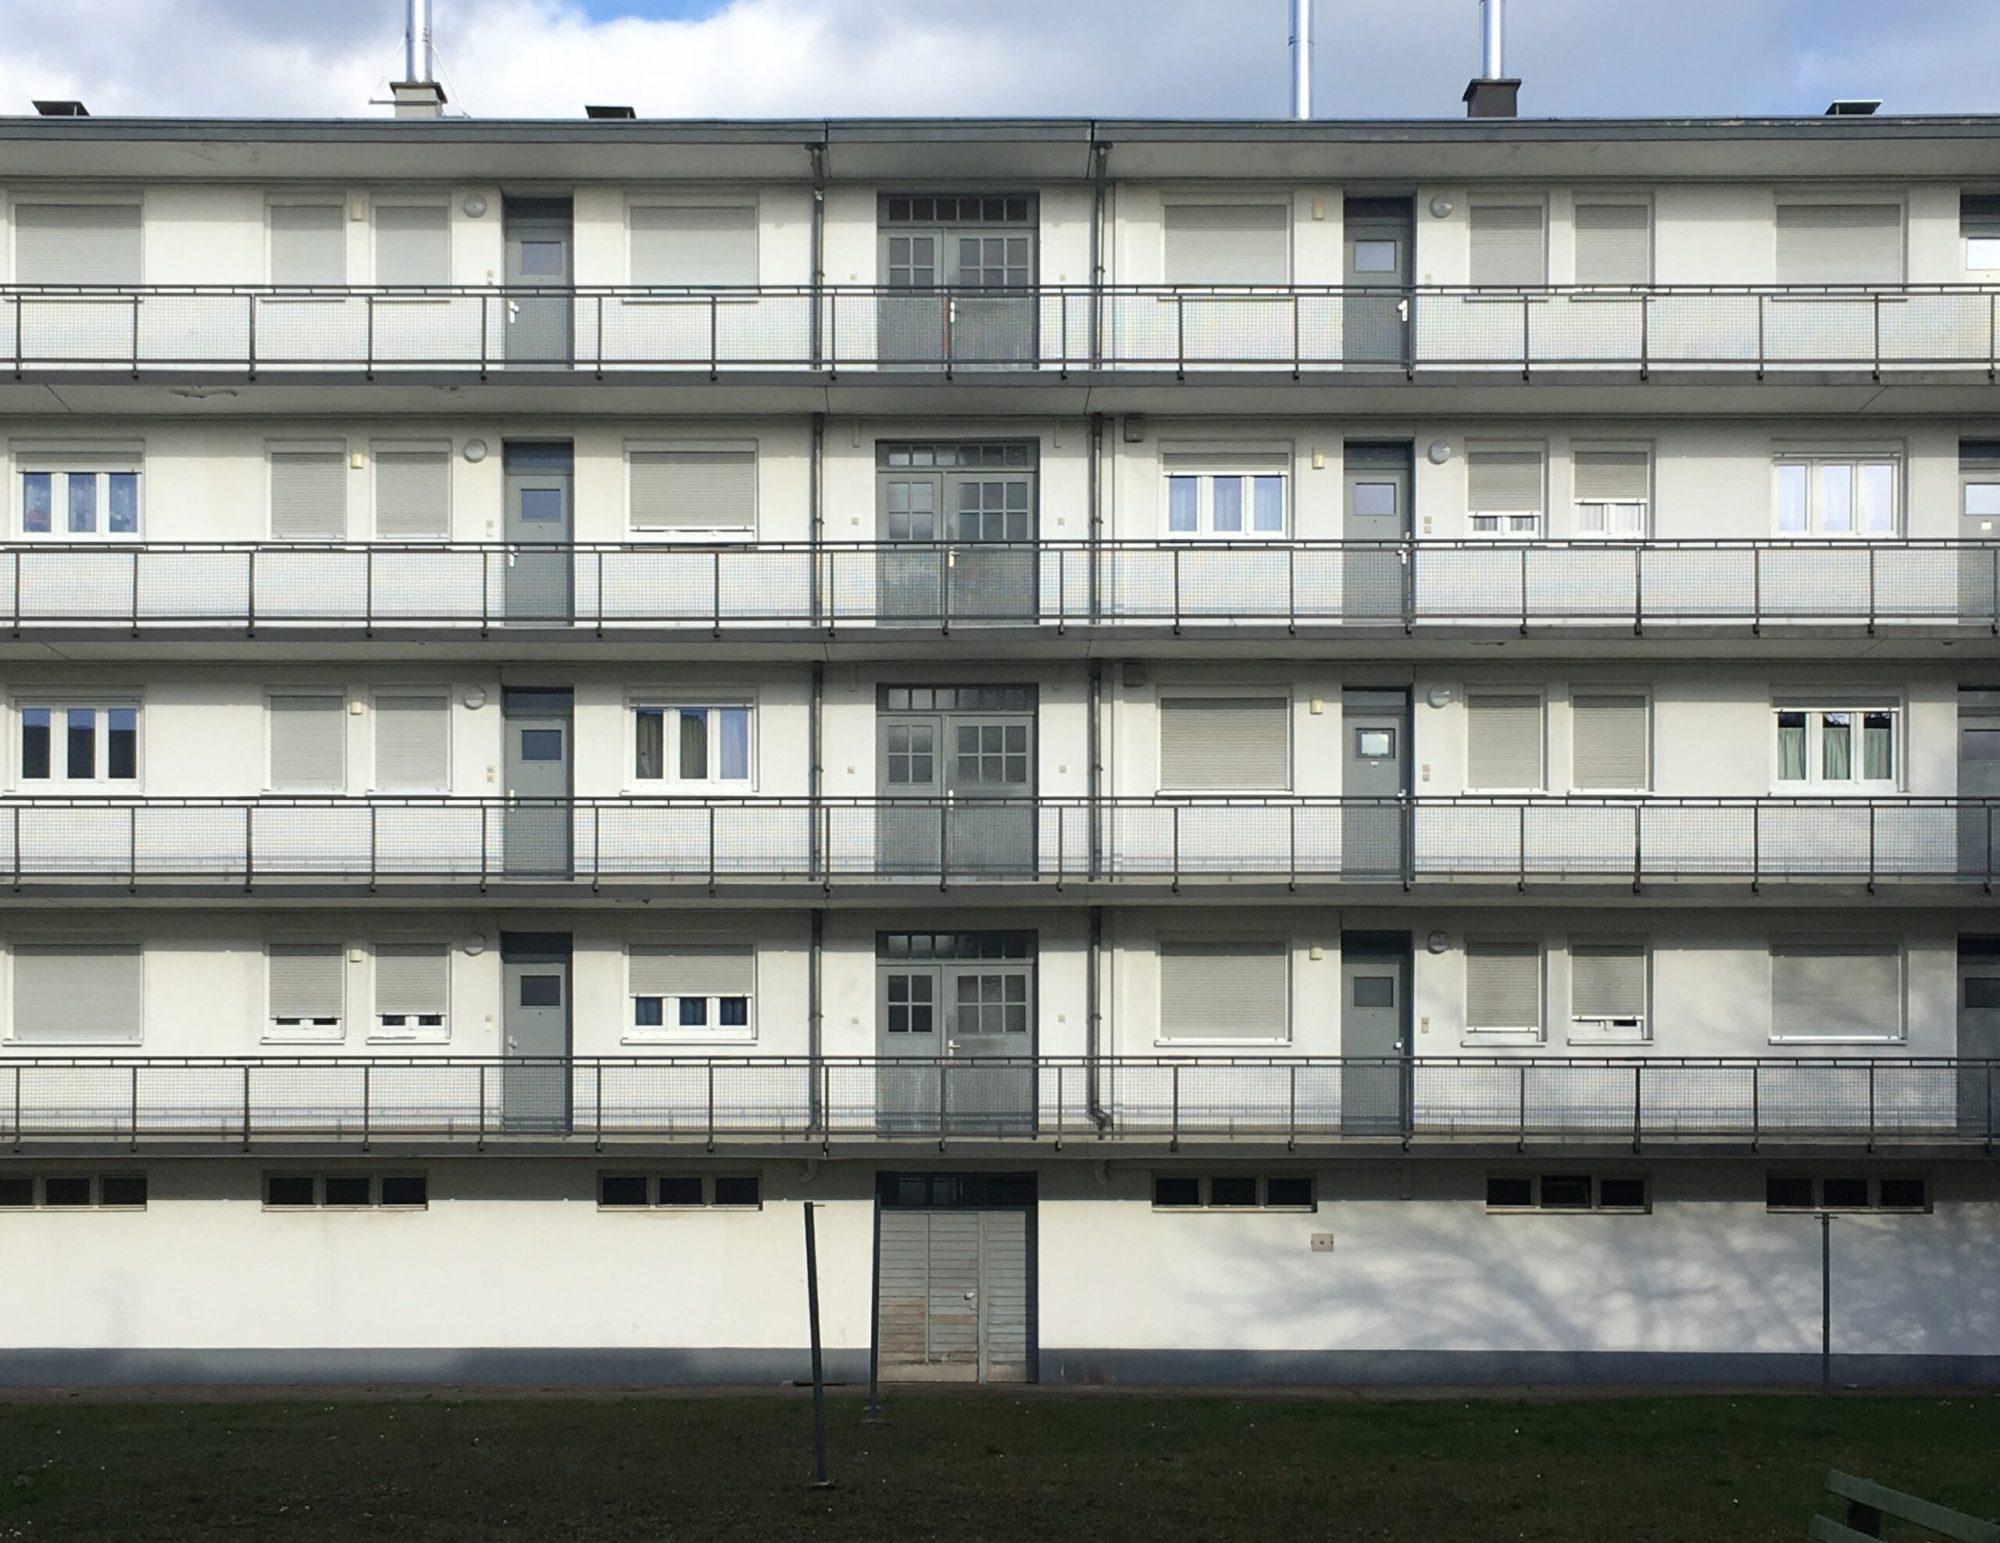 Mehrfamilienhaus, Dammerstock Siedlung Karlsruhe, 1929, Architekt: Walter Gropius